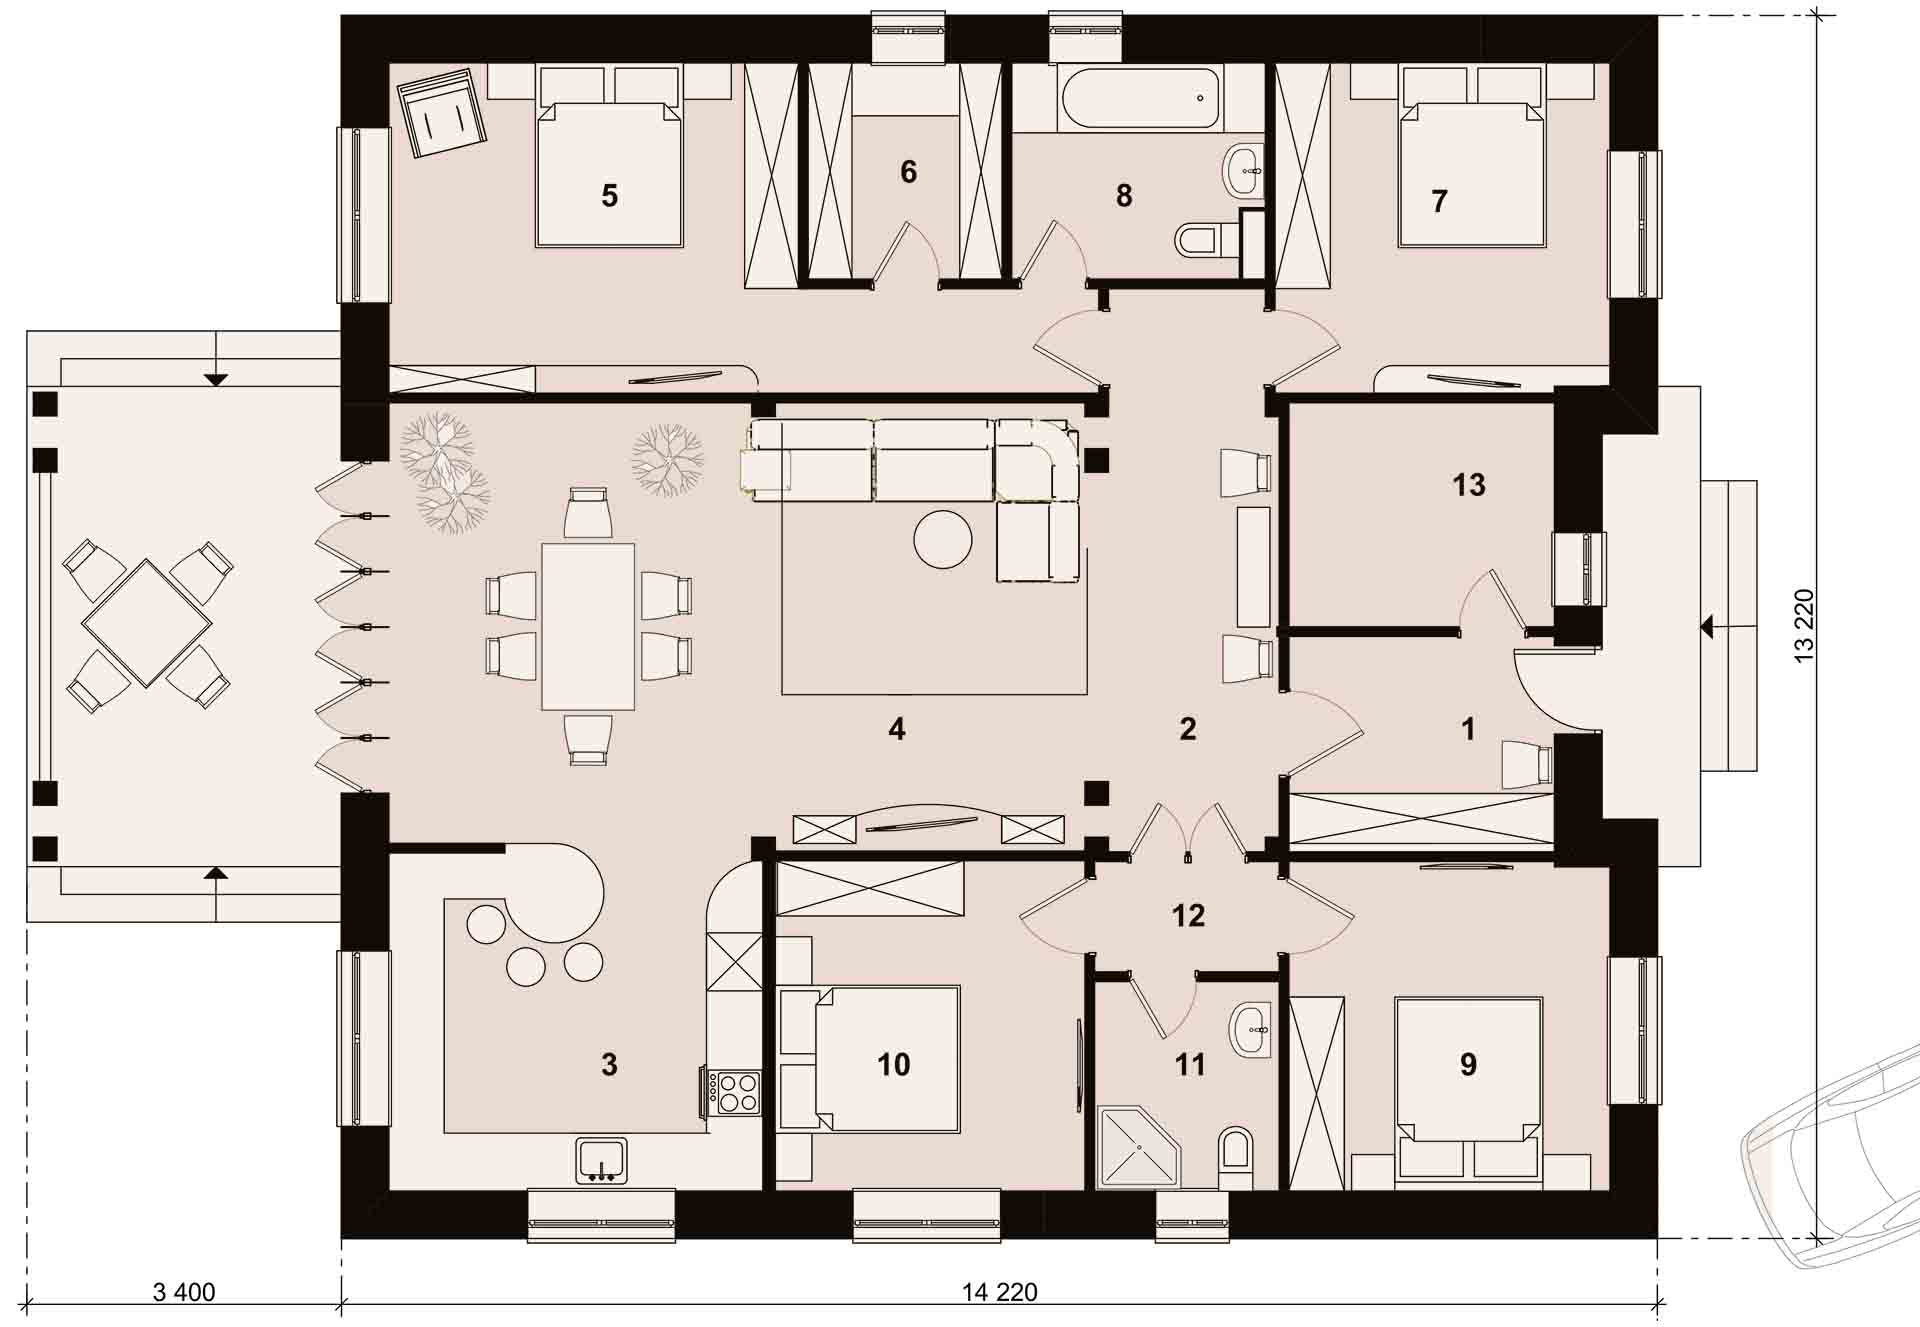 Планировка в проекте одноэтажного 4-комнатного дома <noindex>АКСАЙ</noindex> размером 13 на 14 метров